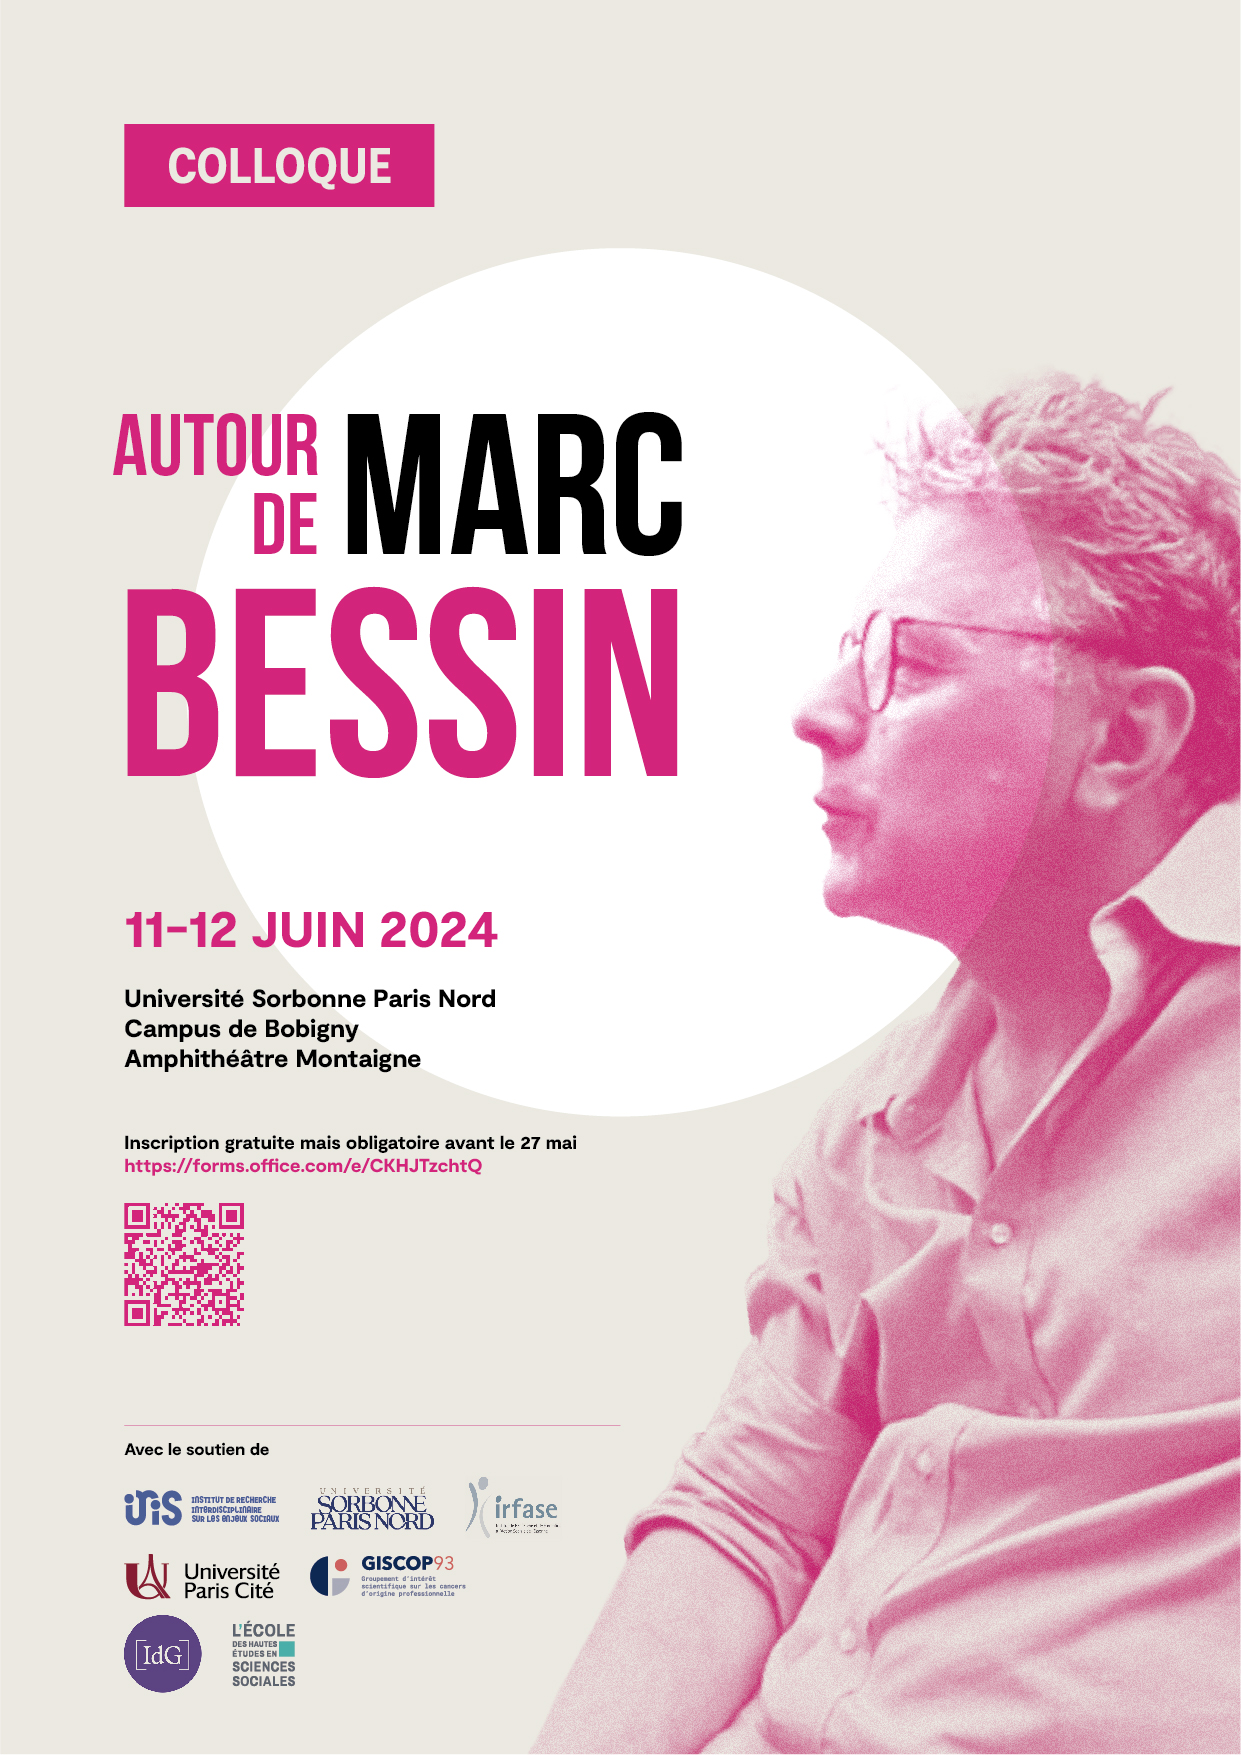 Colloque > Autour de Marc Bessin - 11-12 juin 2024